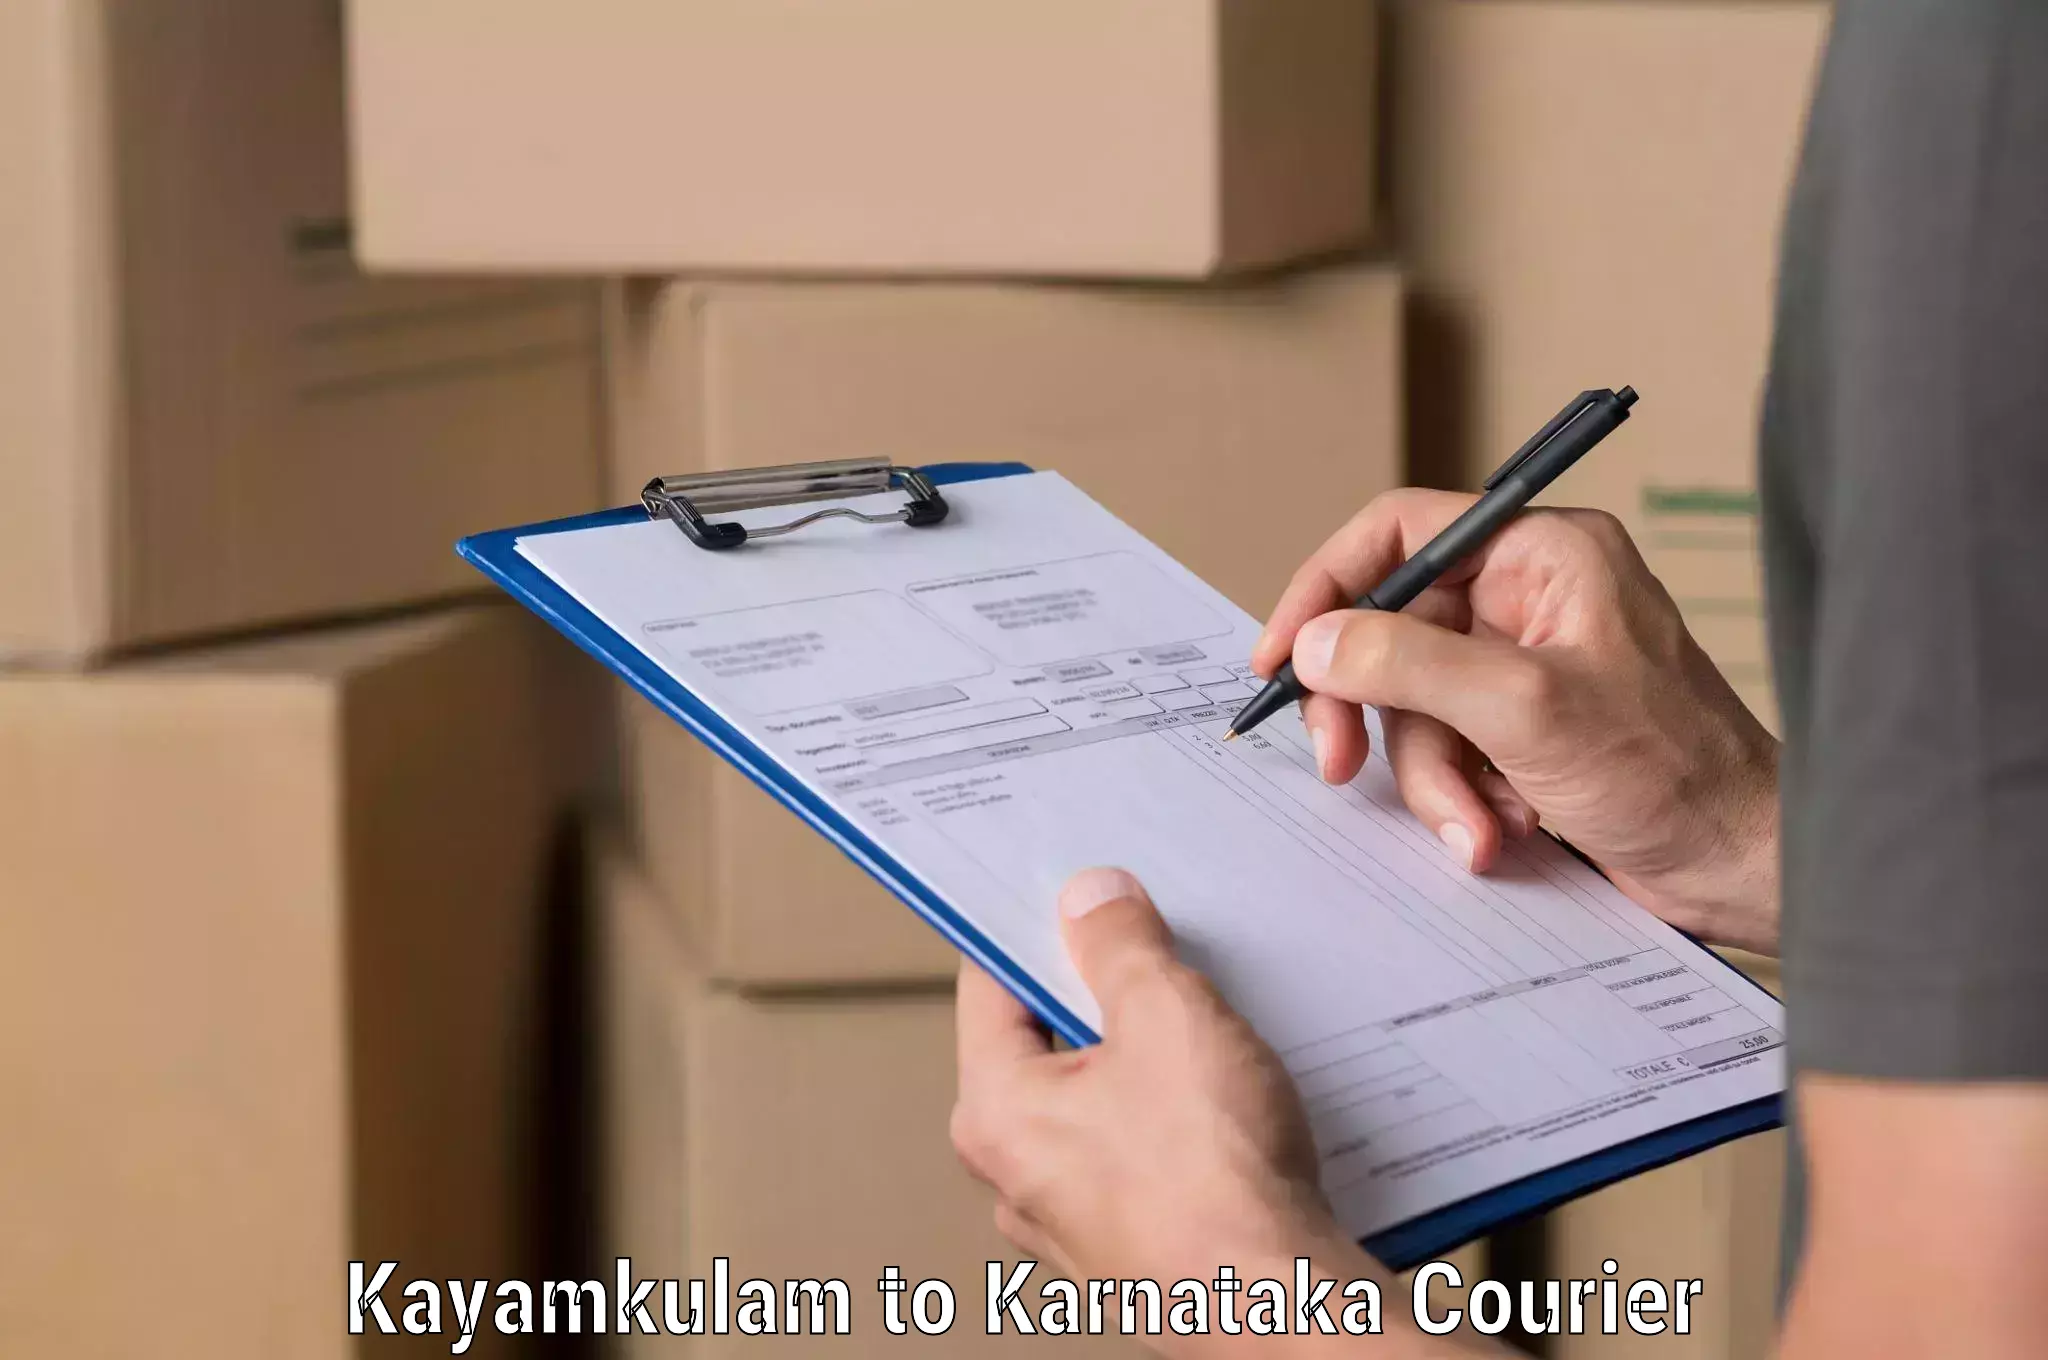 Professional parcel services Kayamkulam to Mundgod